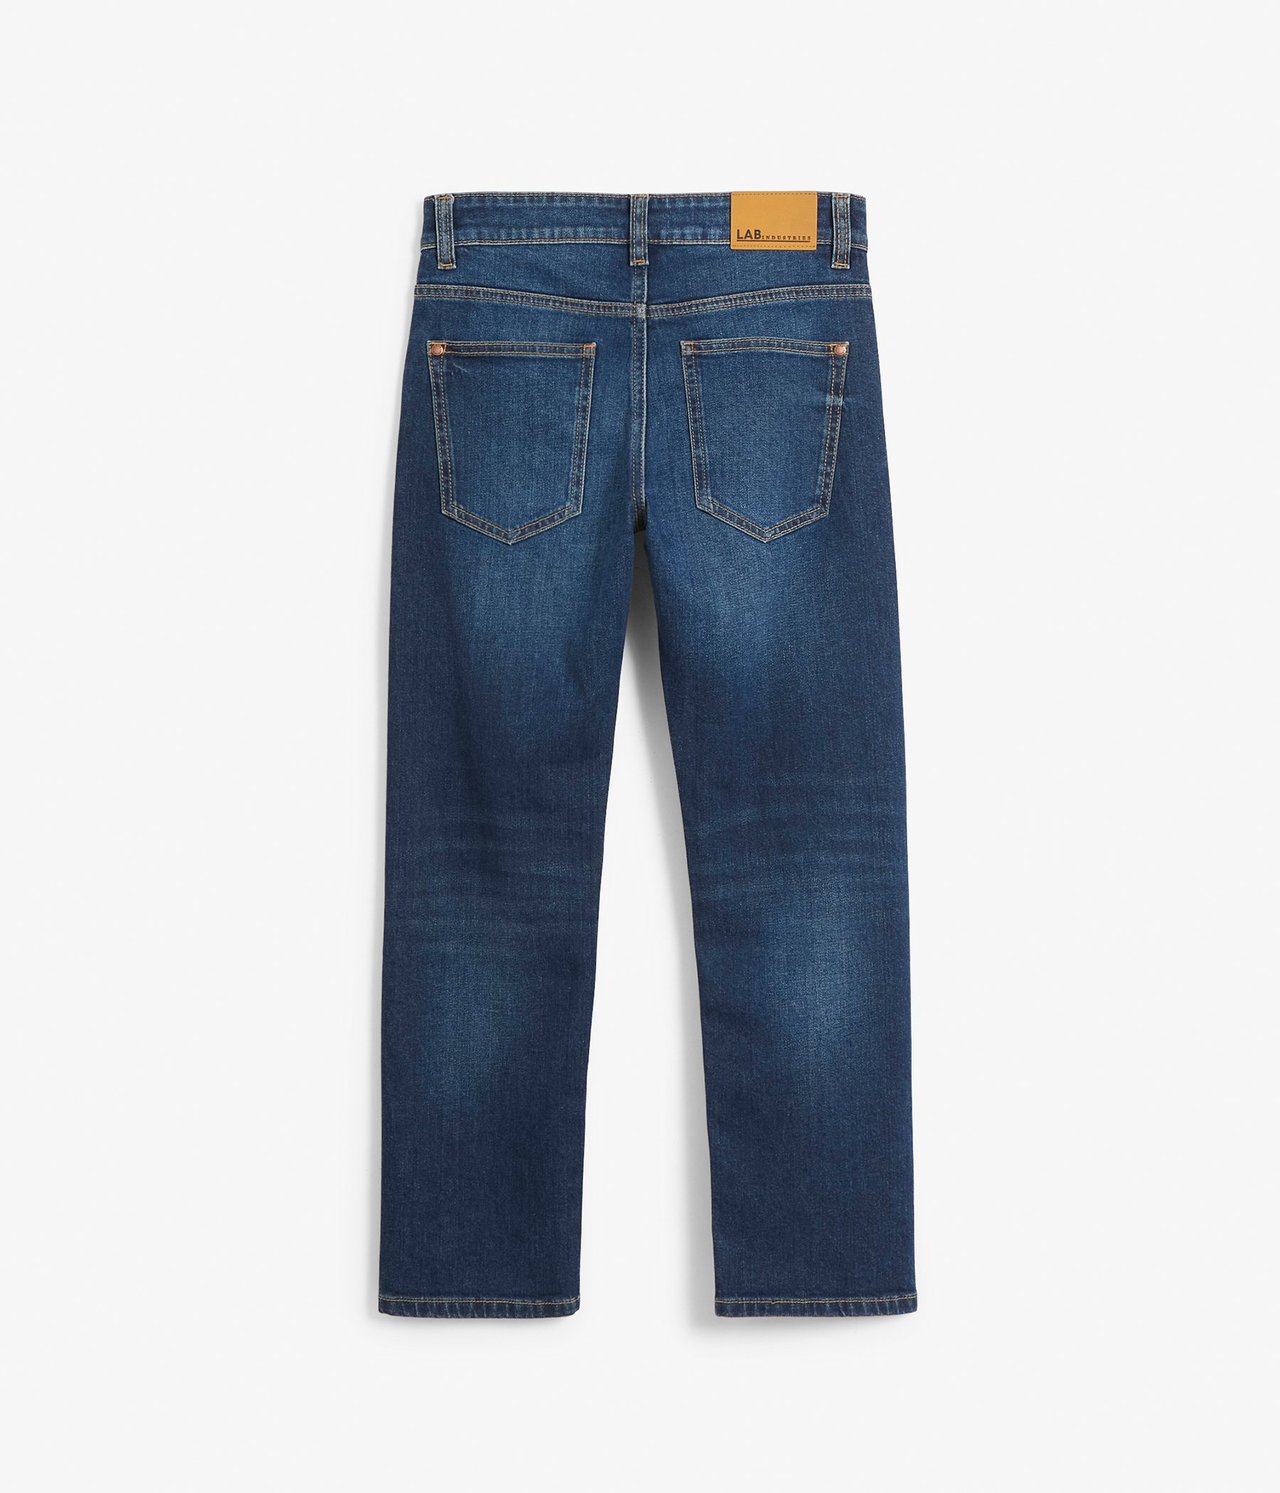 Retro jeans regular fit Tumma denimi - null - 2